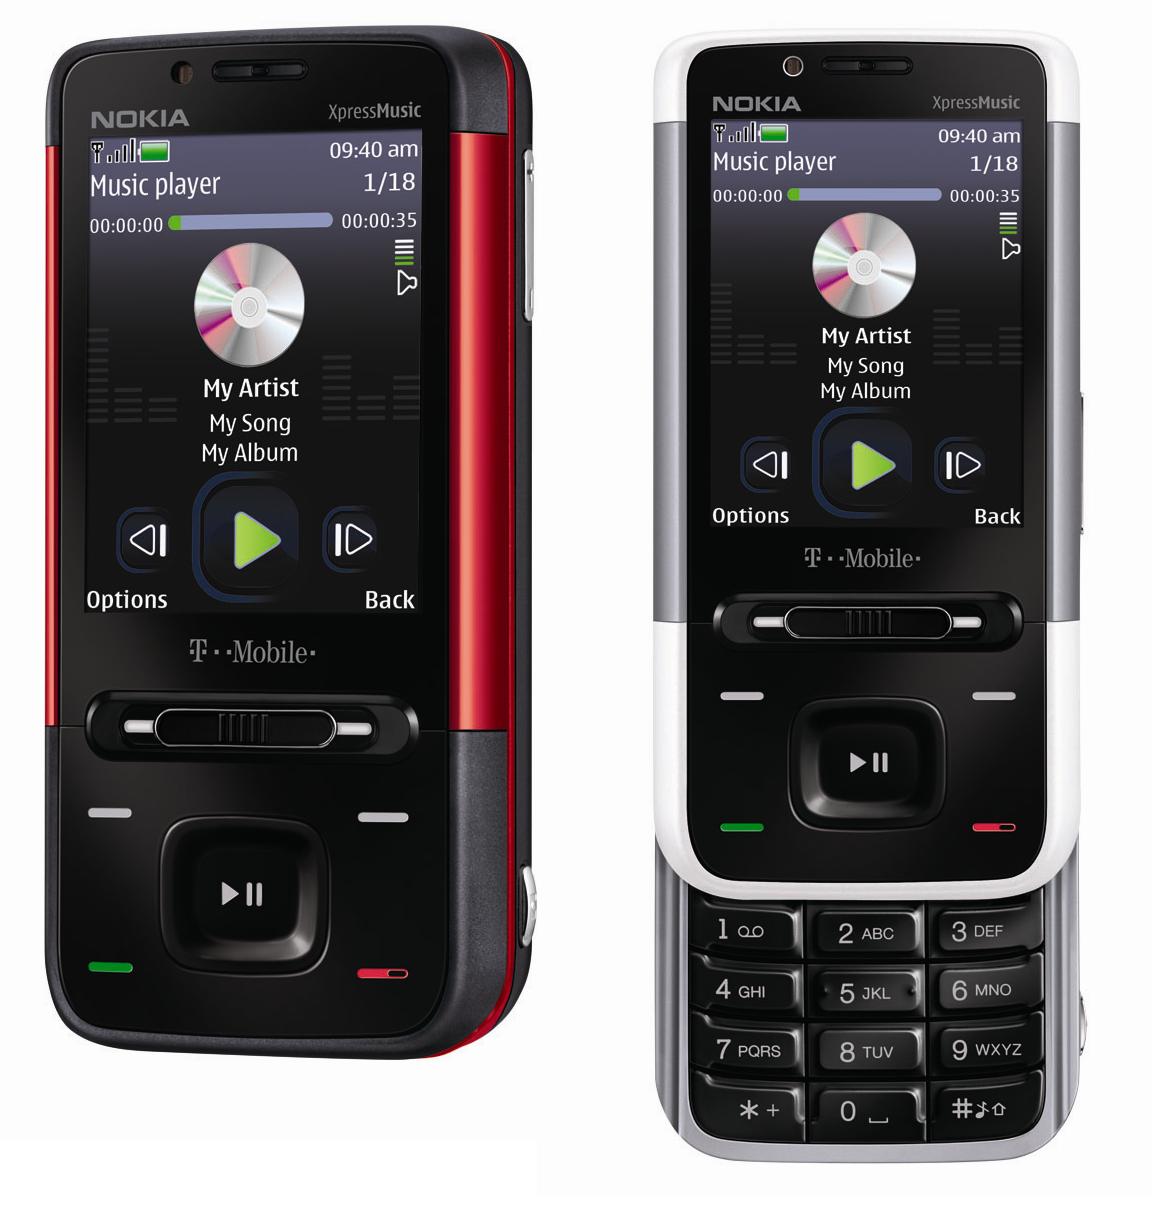 Звук звонка нокиа. Nokia 5610 XPRESSMUSIC. Нокиа экспресс Мьюзик 5610. Нокиа слайдер 5800. Nokia 5600 XPRESSMUSIC.